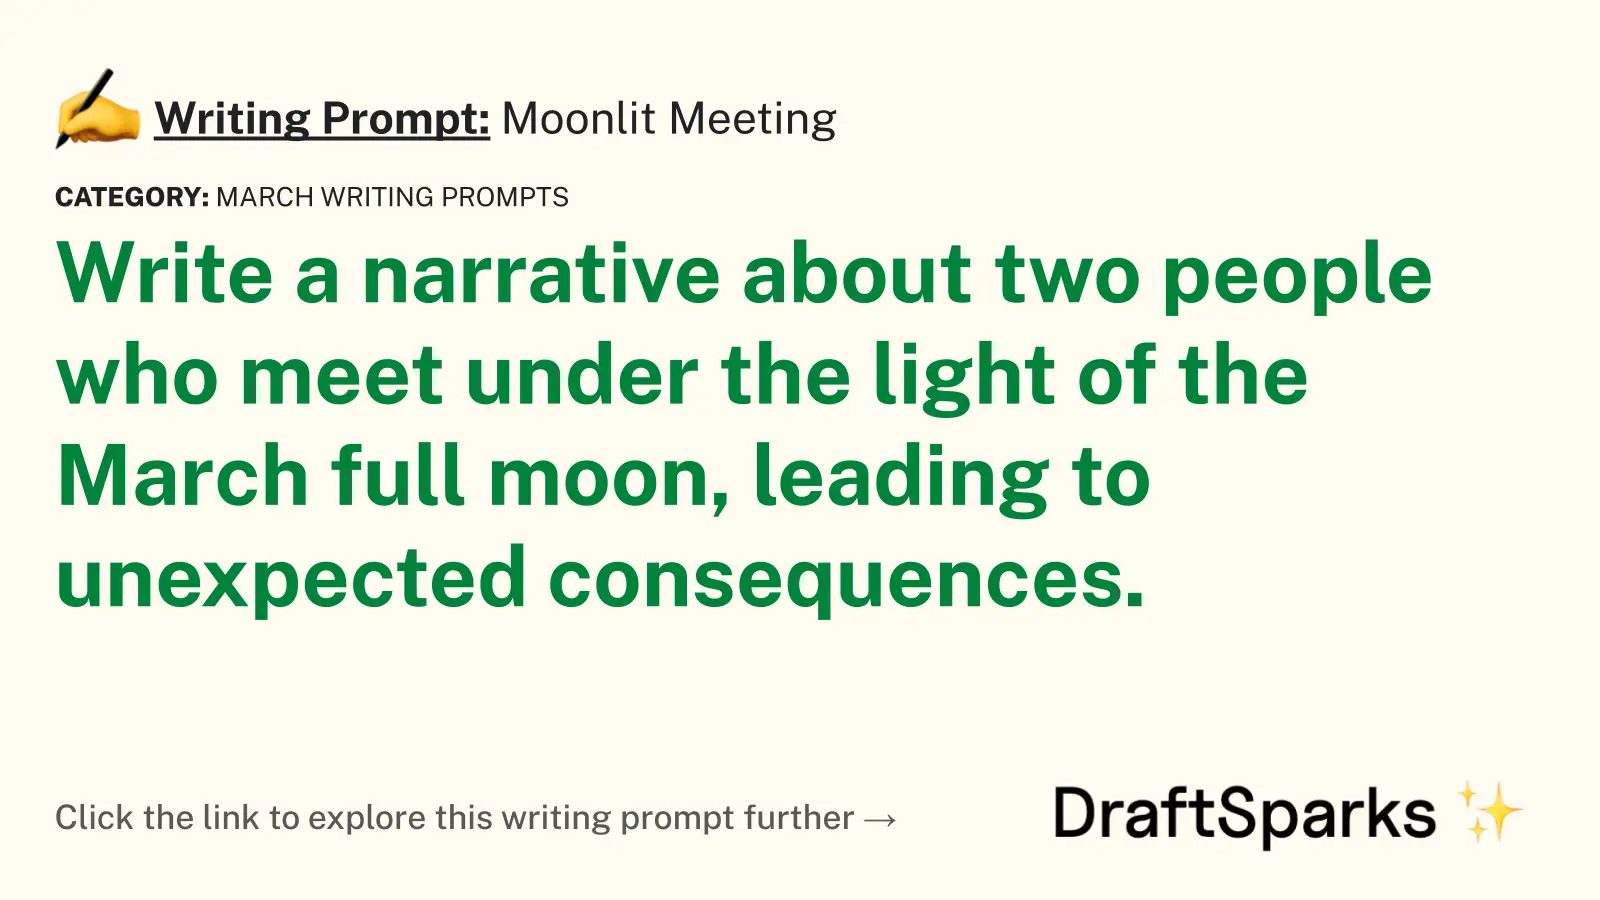 Moonlit Meeting